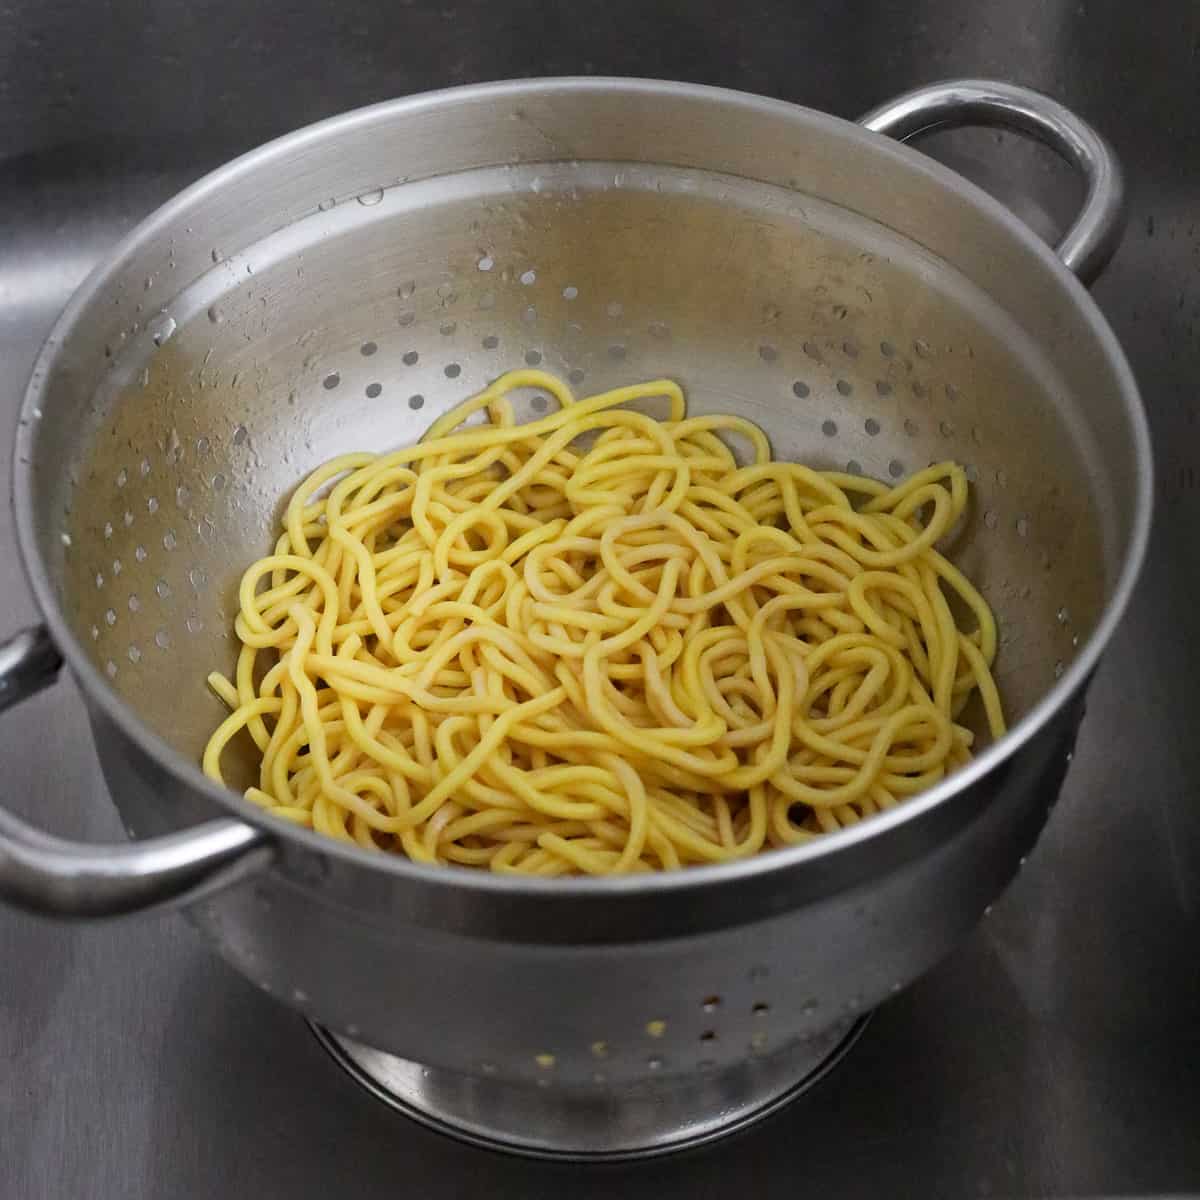 Strain Noodles